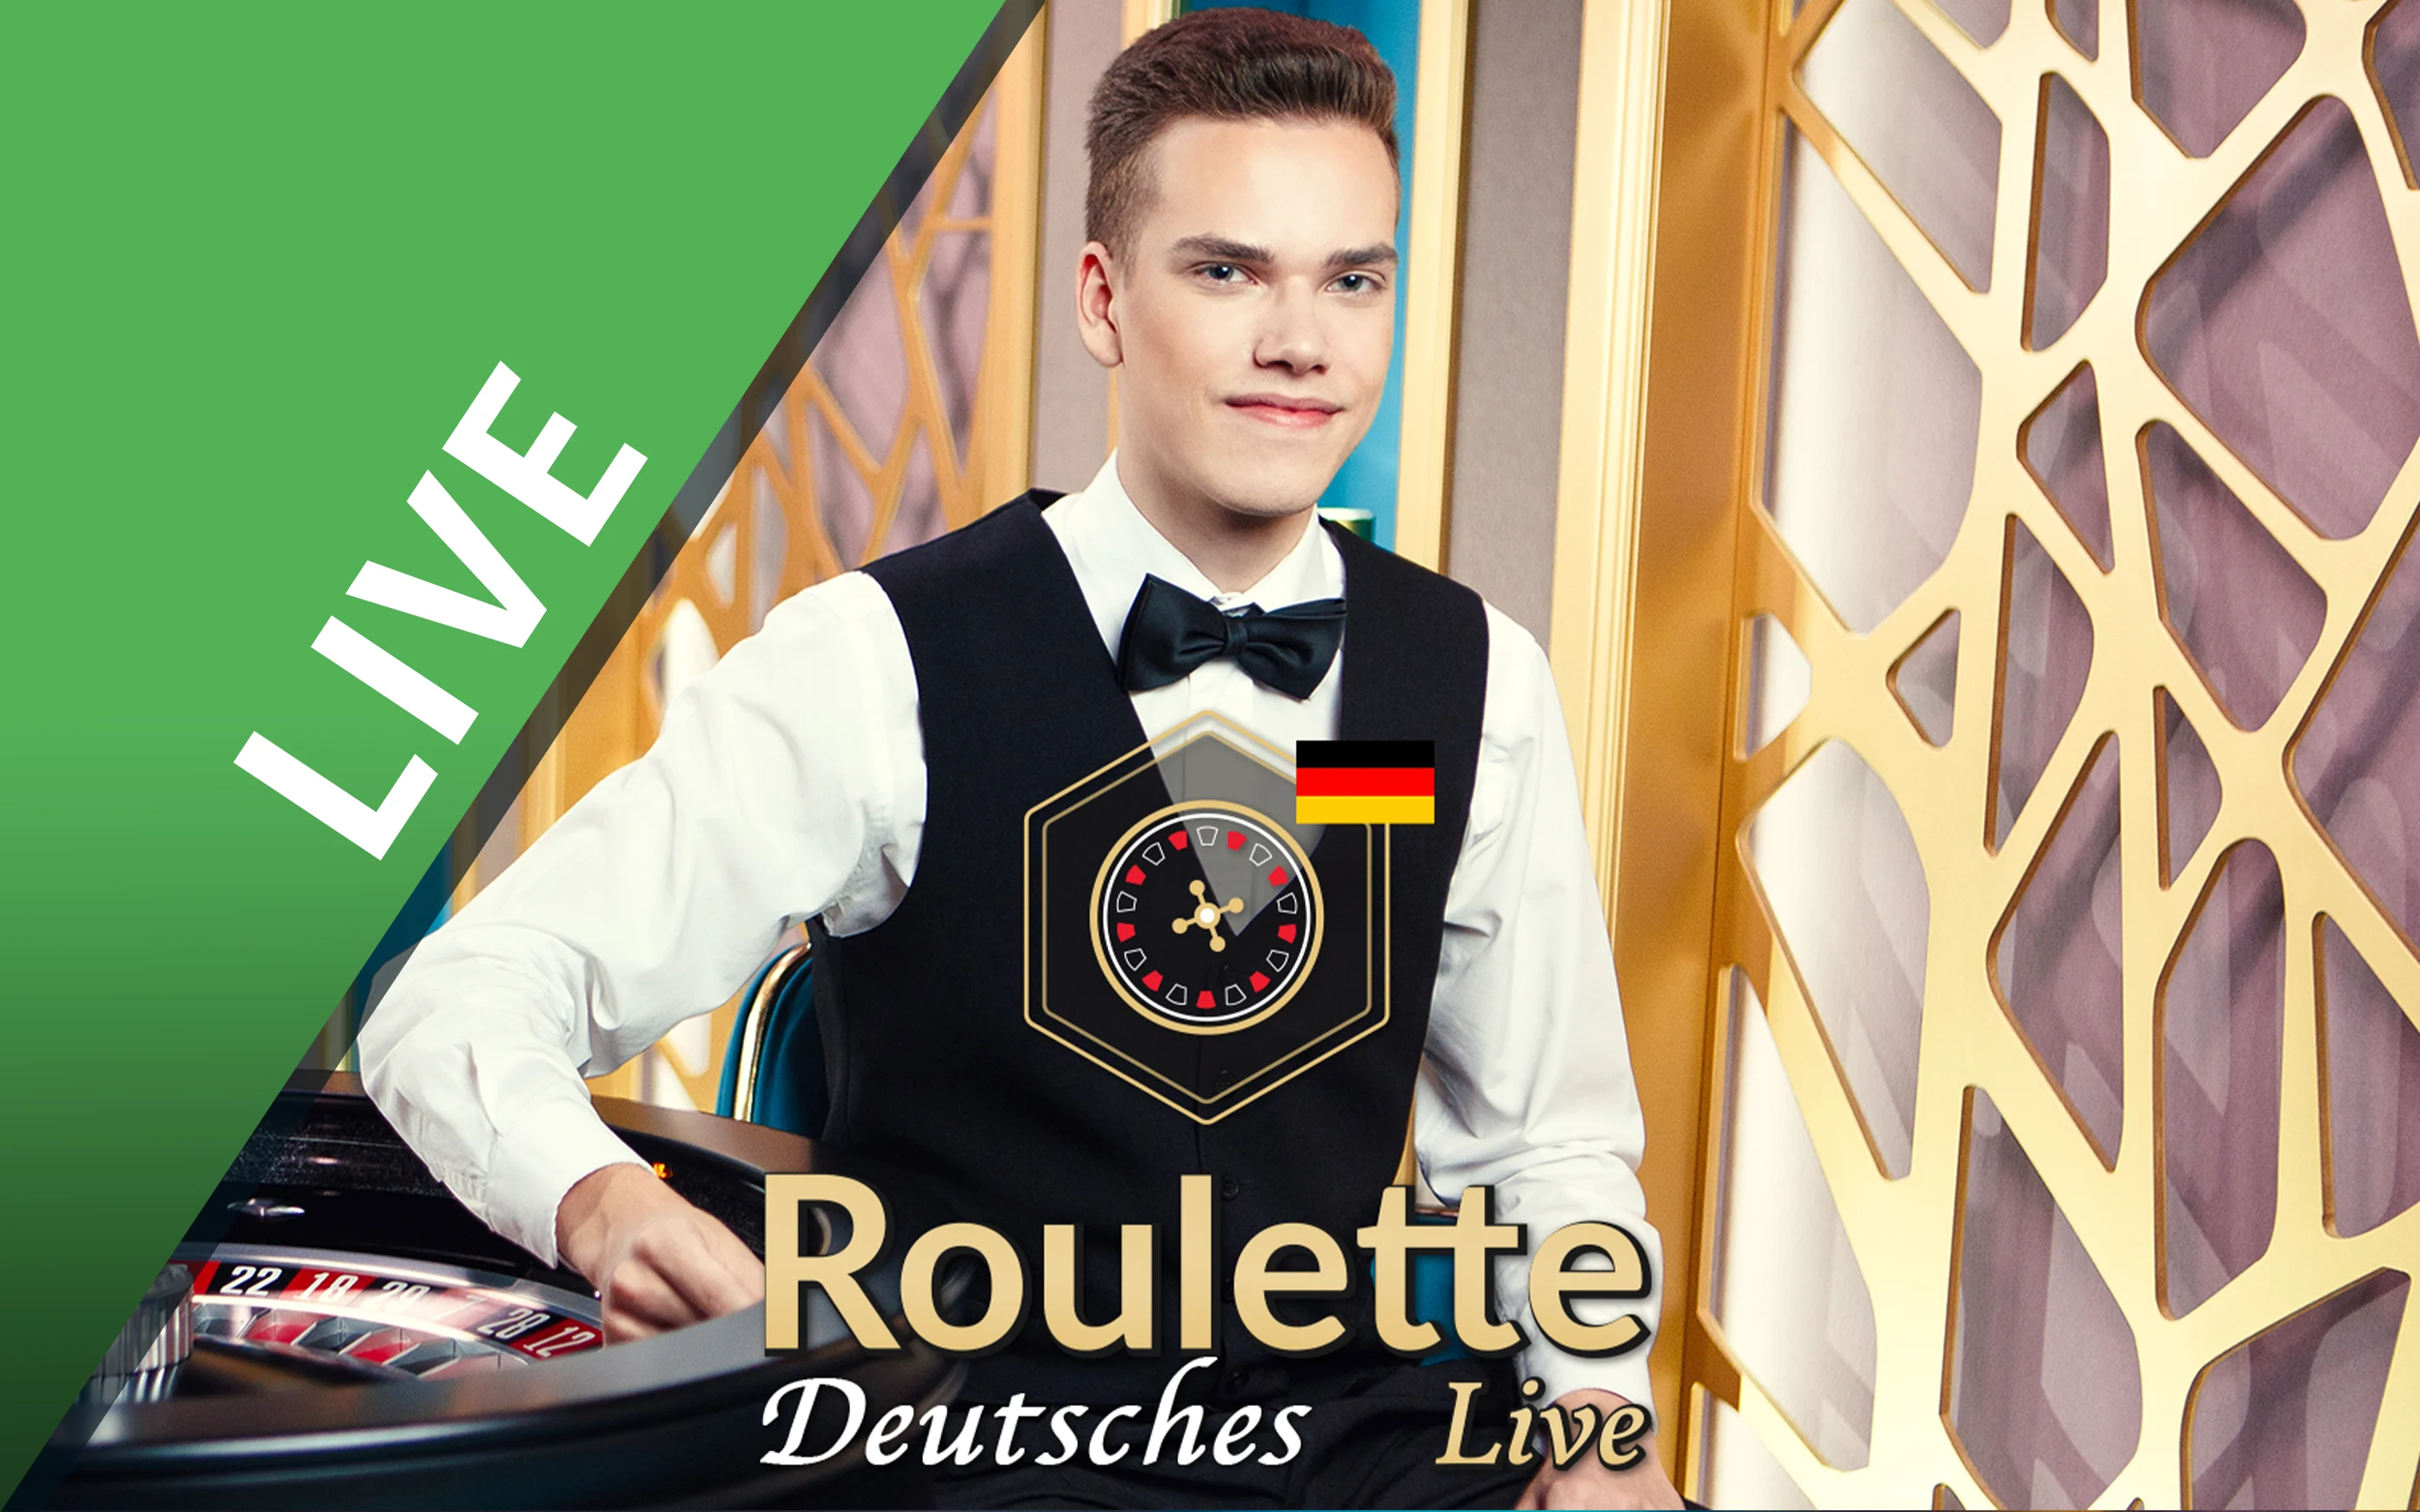 Gioca a Deutsches Roulette sul casino online Starcasino.be